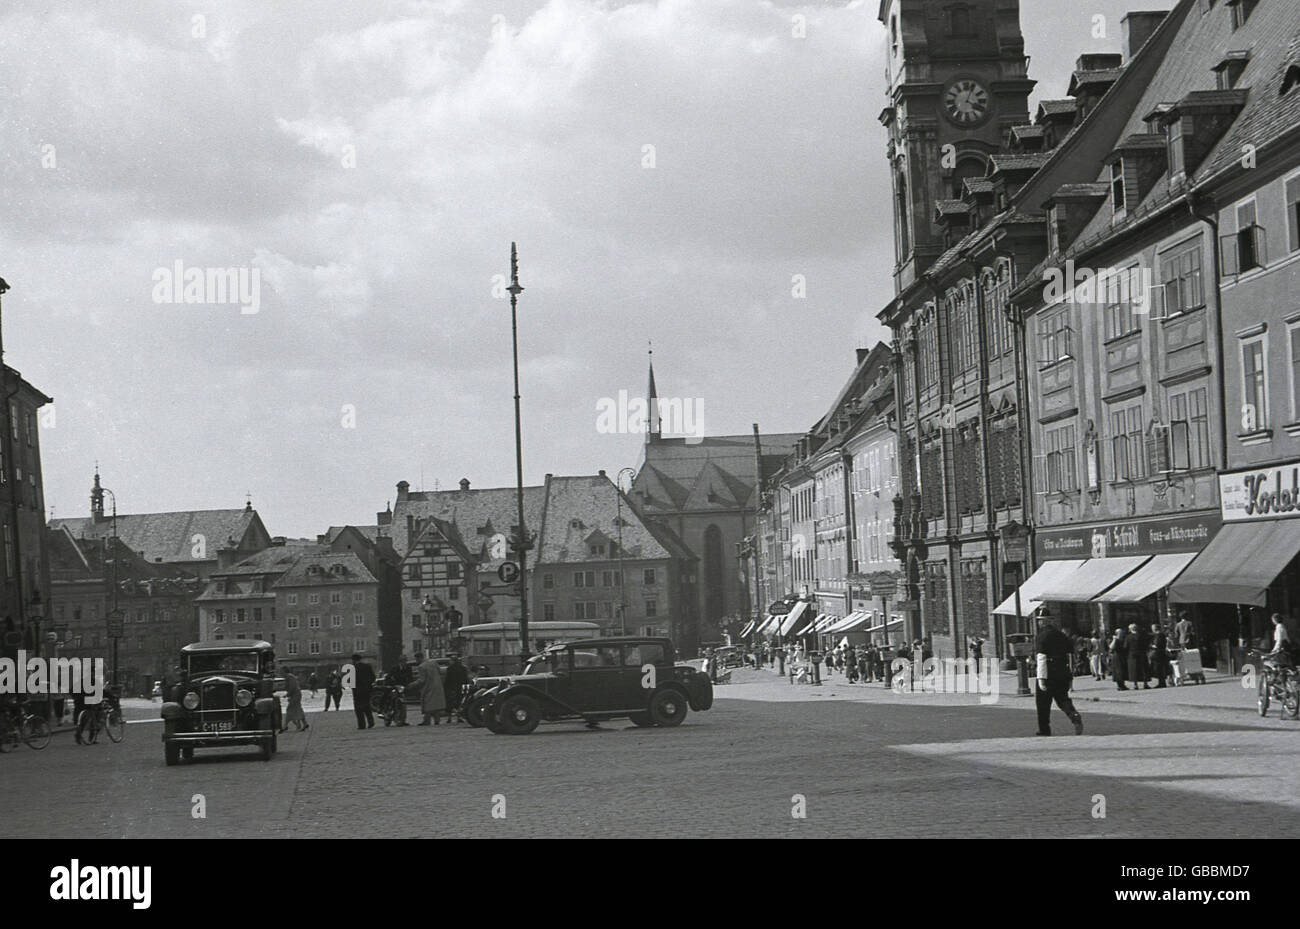 1930er Jahre, historisch, Pre-ww11 Blick auf die mittelalterliche Stadt Cheb (Eger) in der Region Karlovy aus dem damaligen Sudetenland in Interwar Tschechoslowakei. Stockfoto